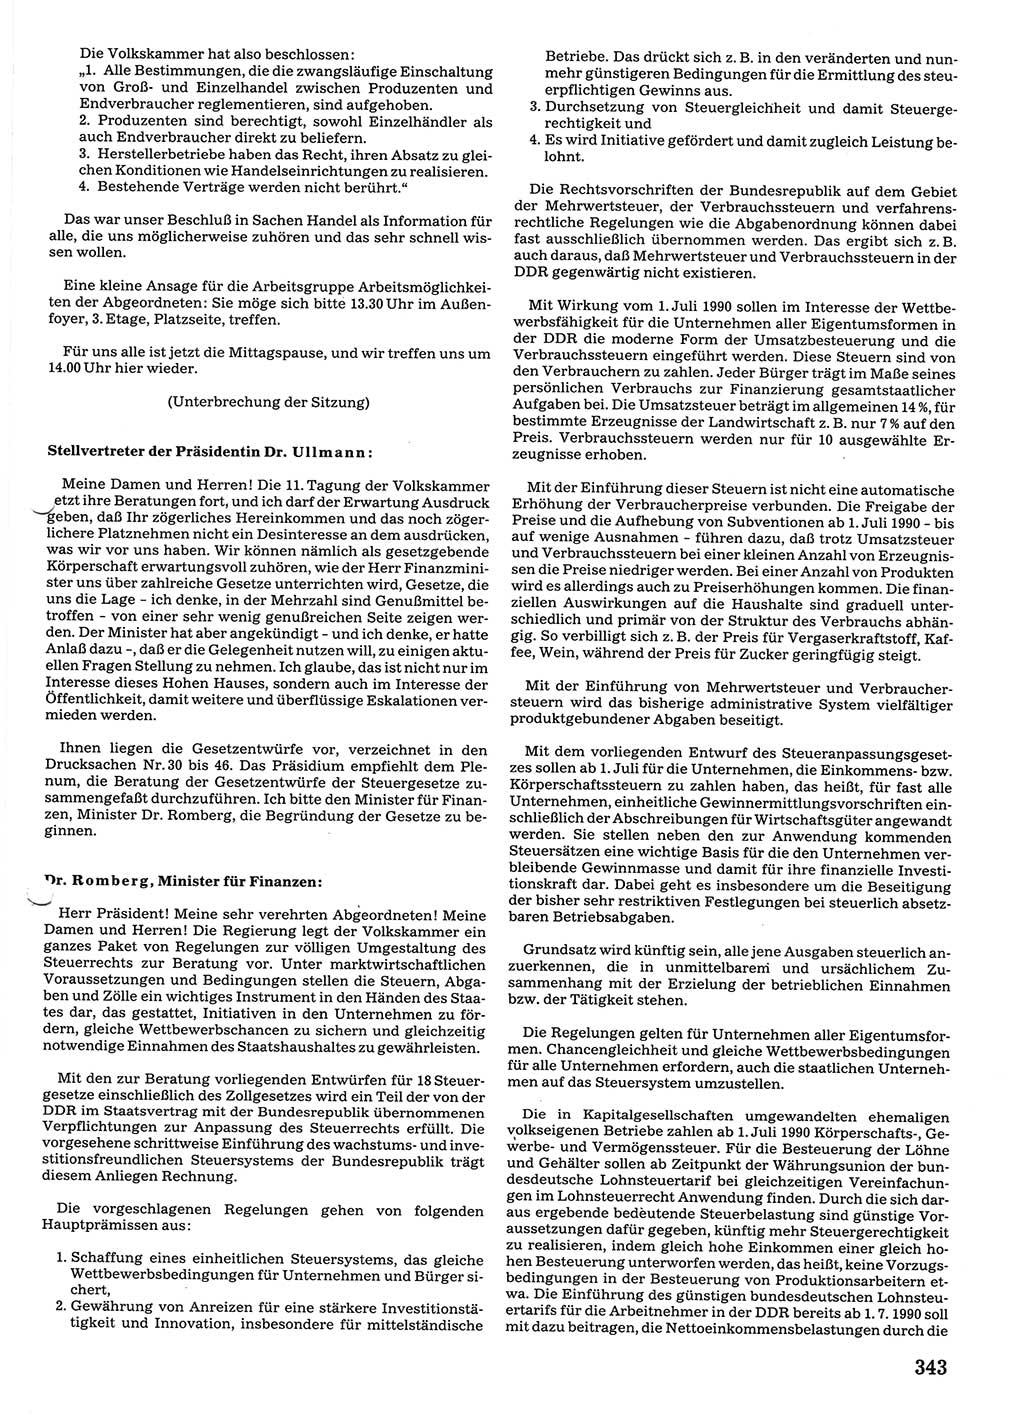 Tagungen der Volkskammer (VK) der Deutschen Demokratischen Republik (DDR), 10. Wahlperiode 1990, Seite 343 (VK. DDR 10. WP. 1990, Prot. Tg. 1-38, 5.4.-2.10.1990, S. 343)